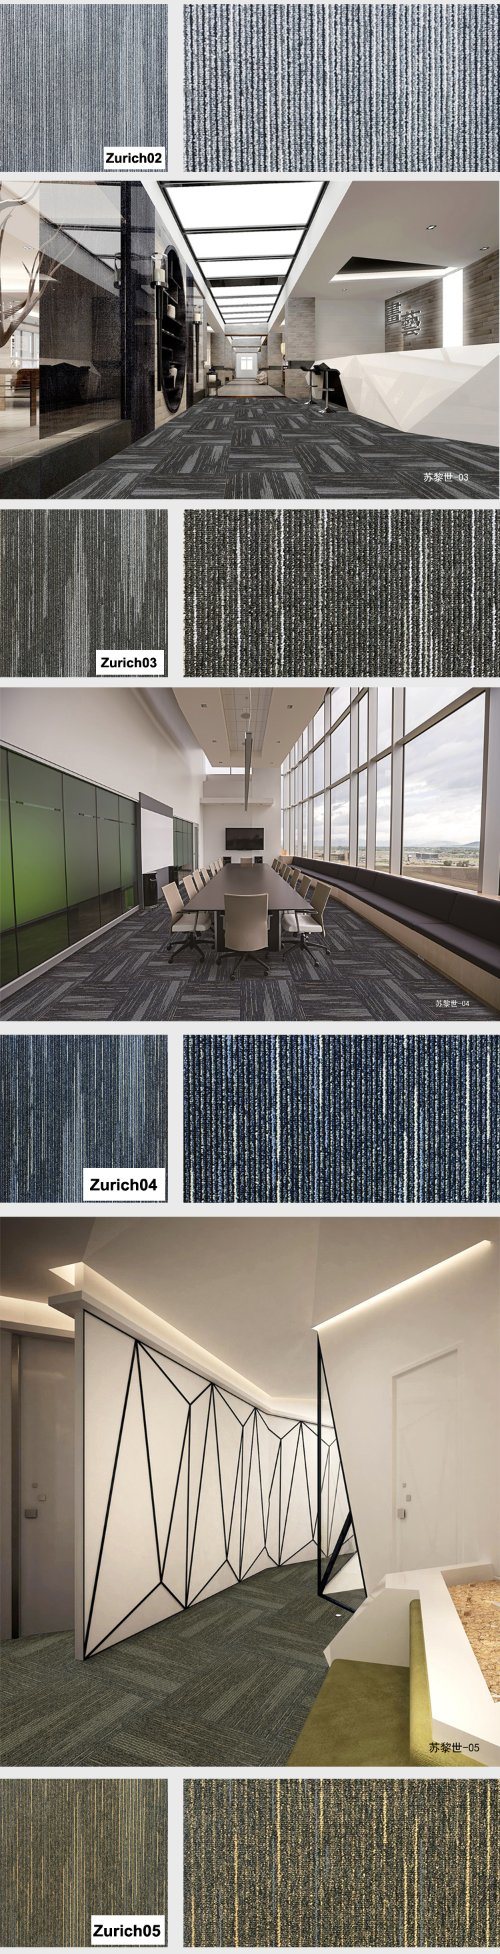 Zurich -1/12 Gauge House Carpet Loop Pile Jacquard Carpet Tile with Bitumen Back